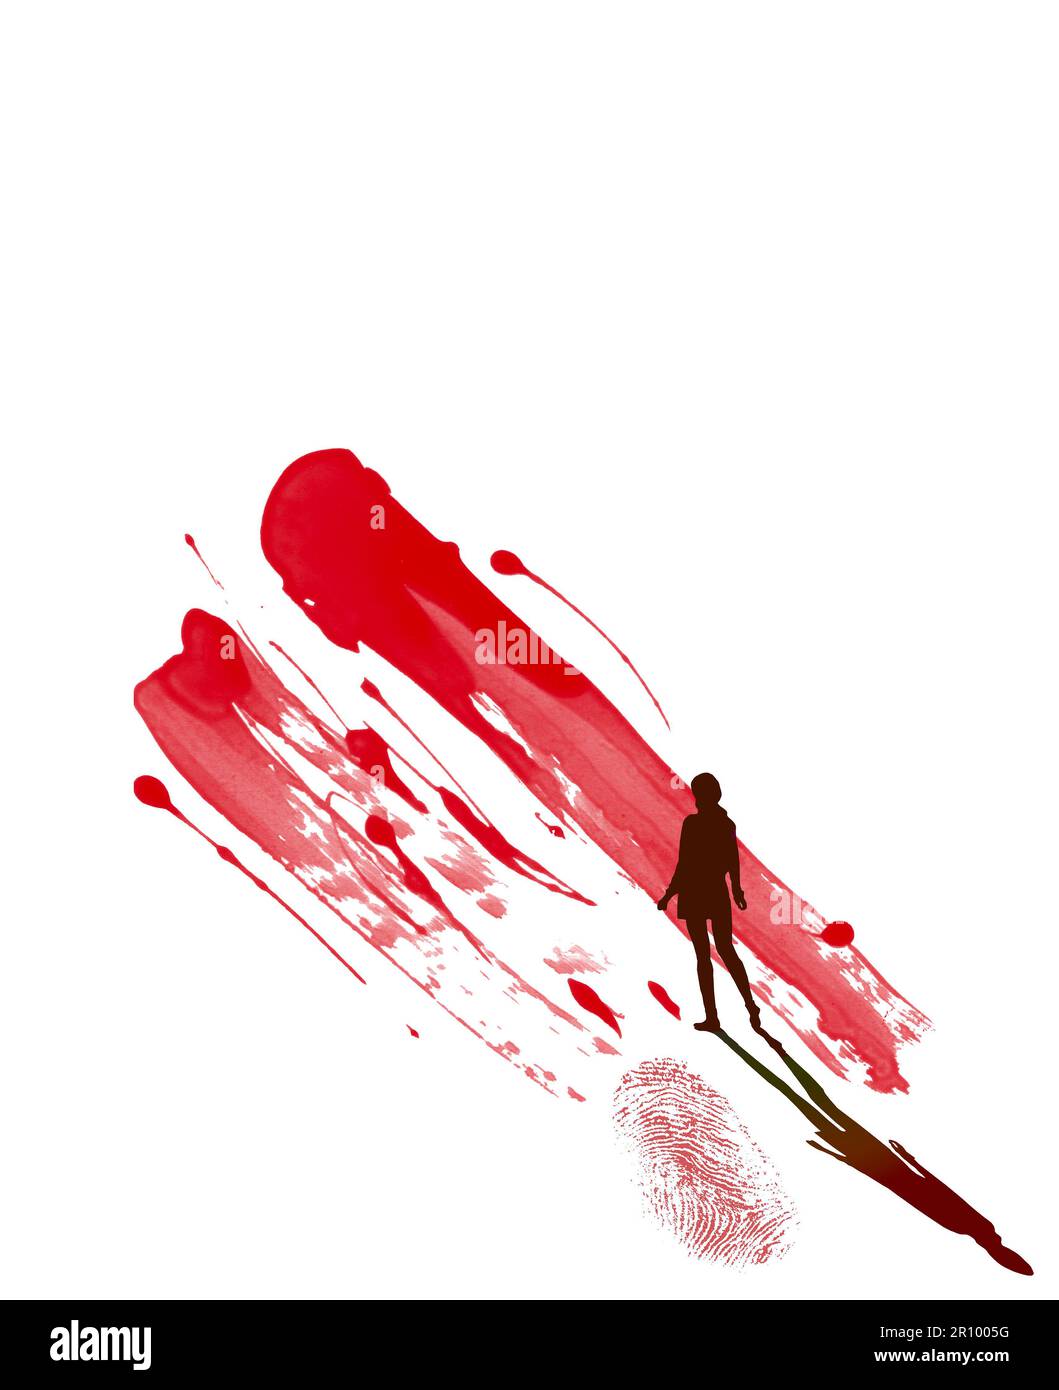 Une fille et une ombre silhouetées sont vues avec une empreinte sanglante et des éclaboussures de sang dans une illustration de 3-d sur les preuves de sang dans une scène de crime. Banque D'Images